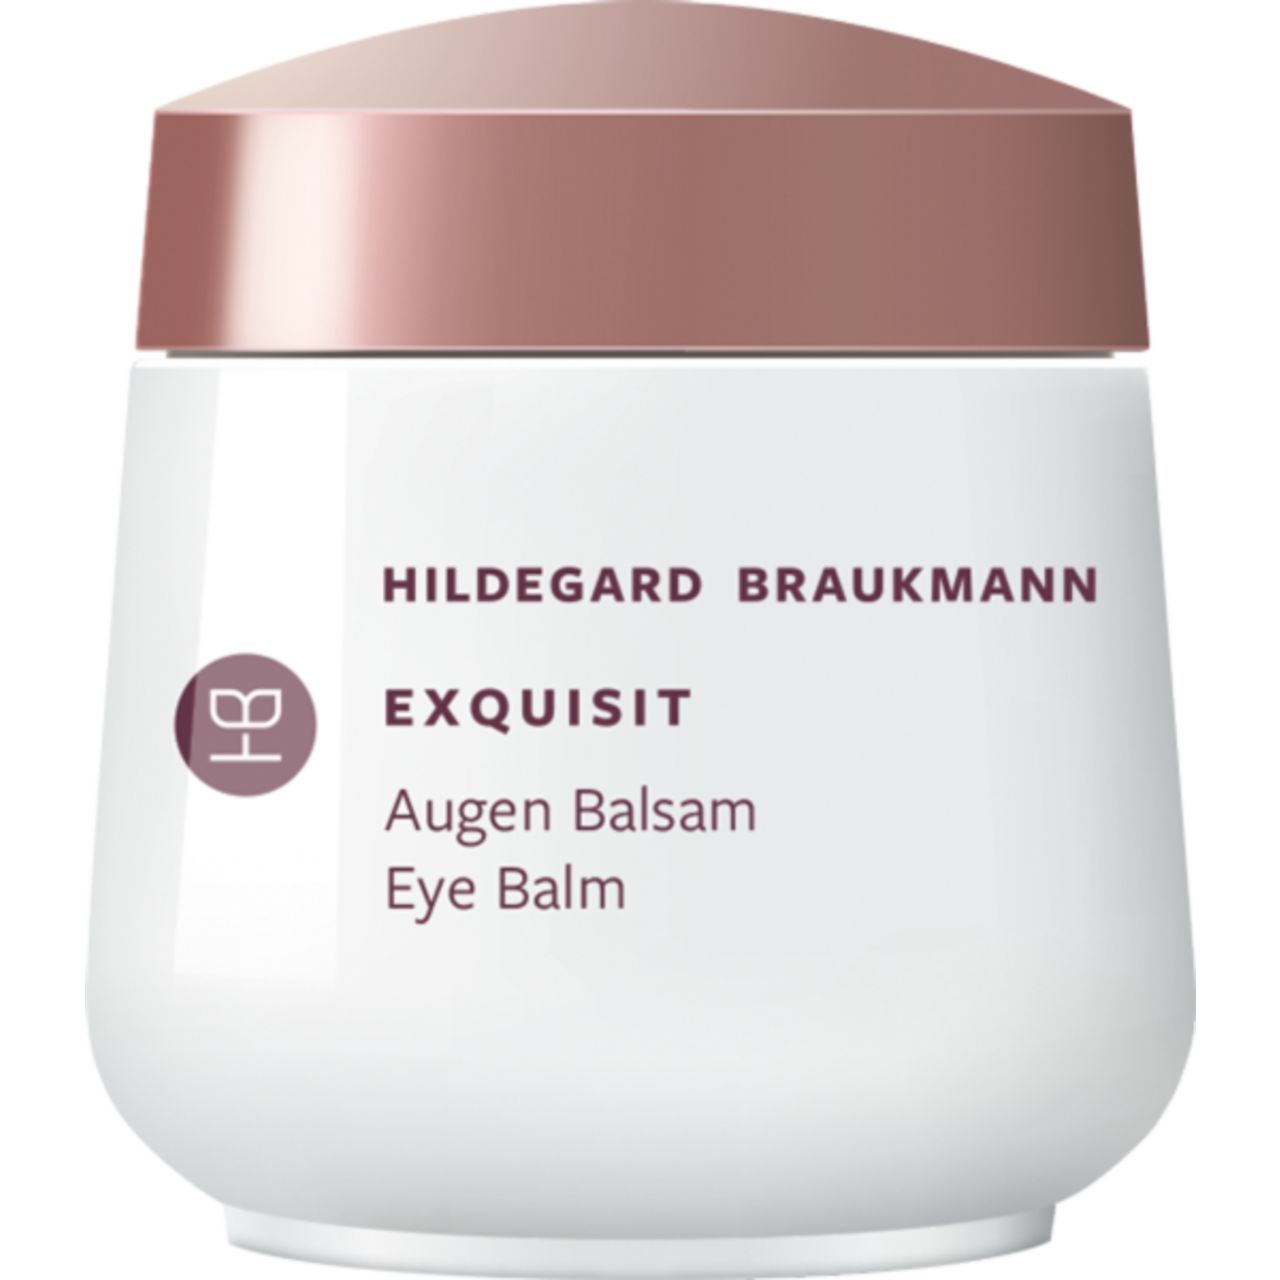 Hildegard Braukmann, Exquisit Augen Balsam